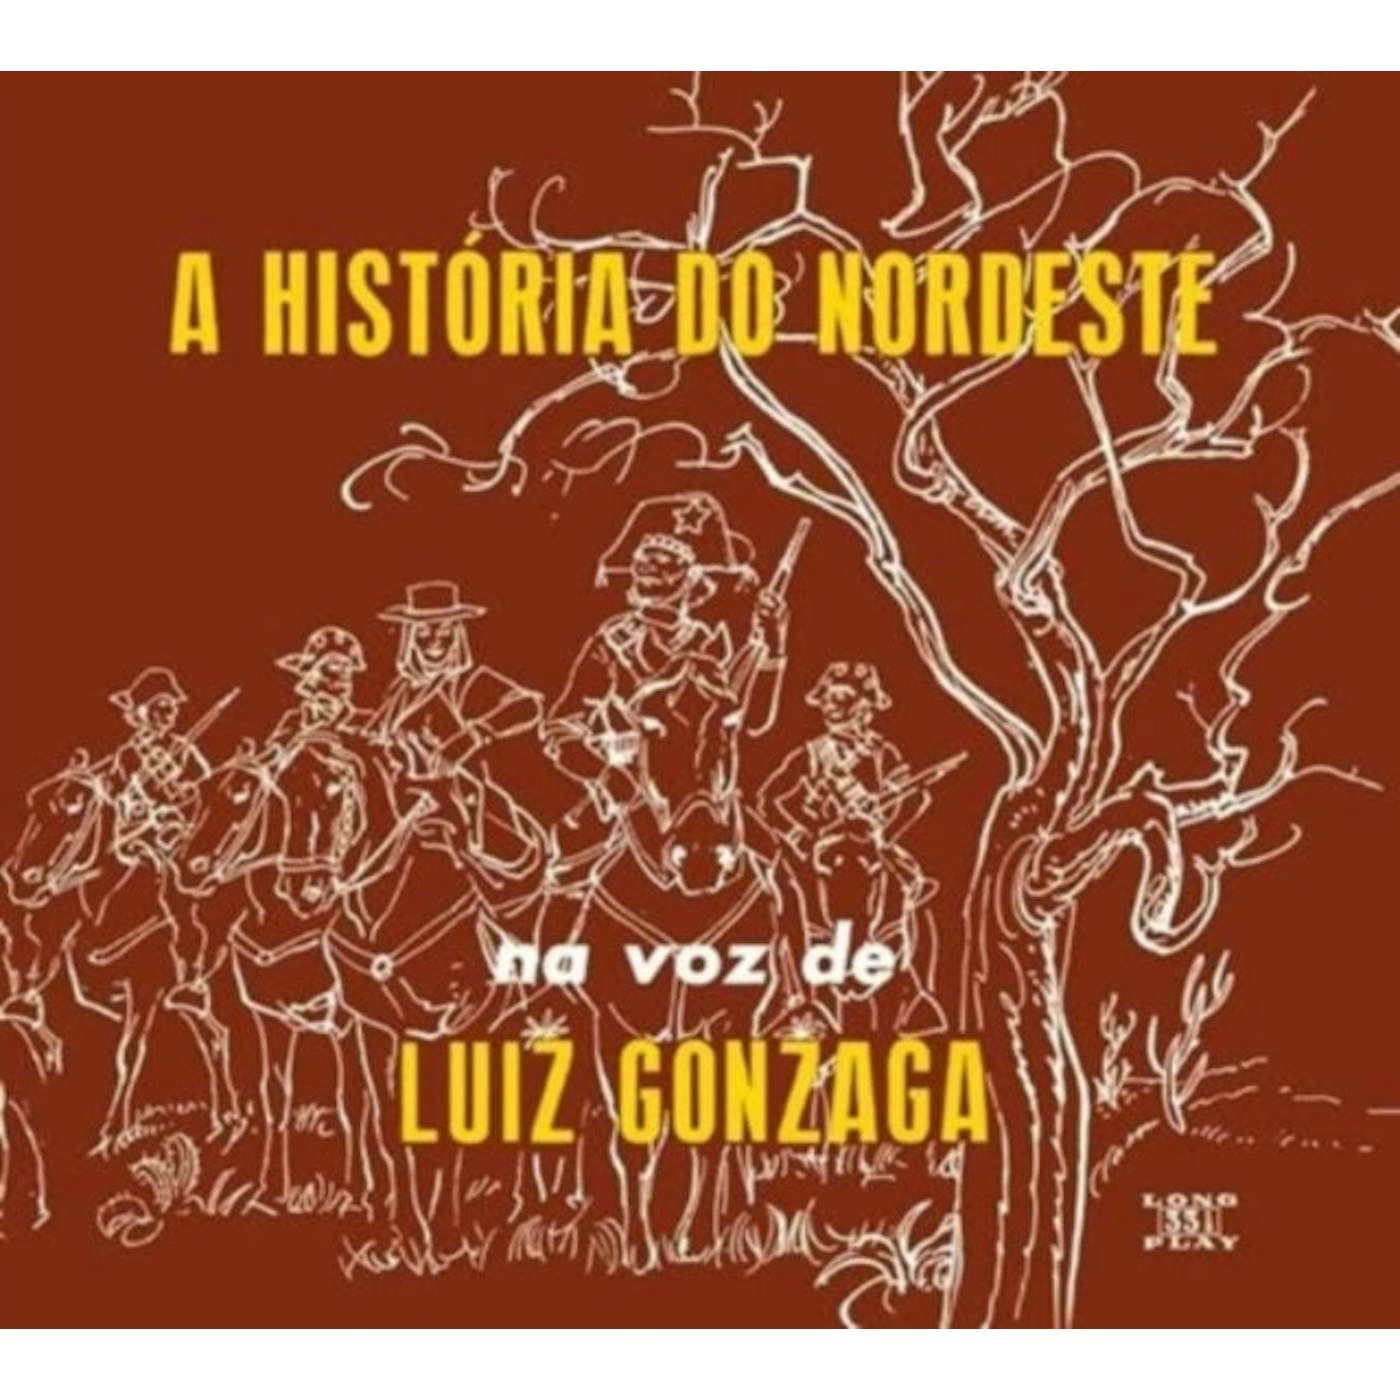 Luiz Gonzaga CD - A Historia Do Nordeste / O Nordeste Na Voz De / Lua